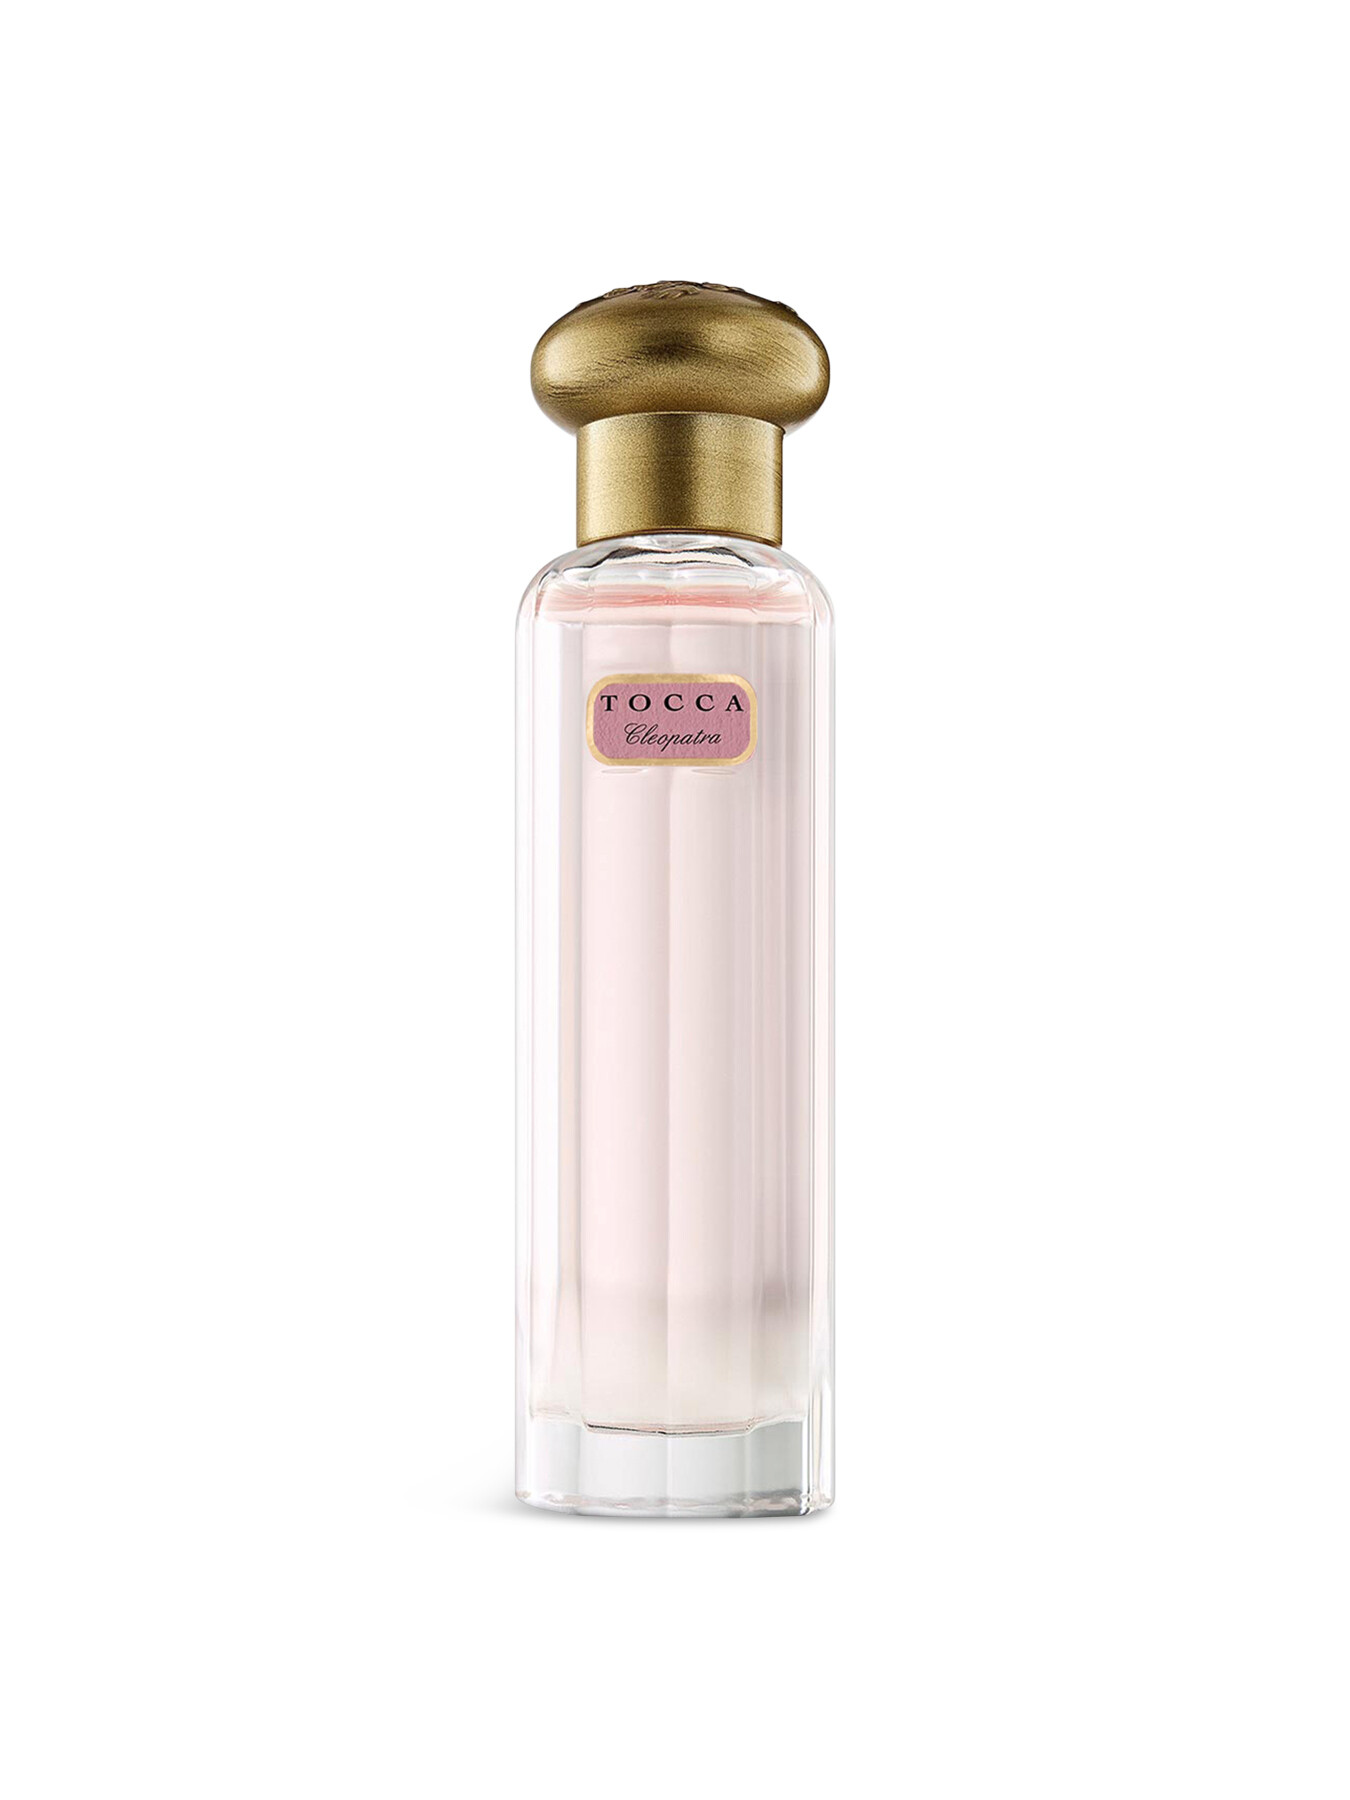 Tocca Cleopatra Eau de Parfum Travel Spray 20 ml | Fenwick